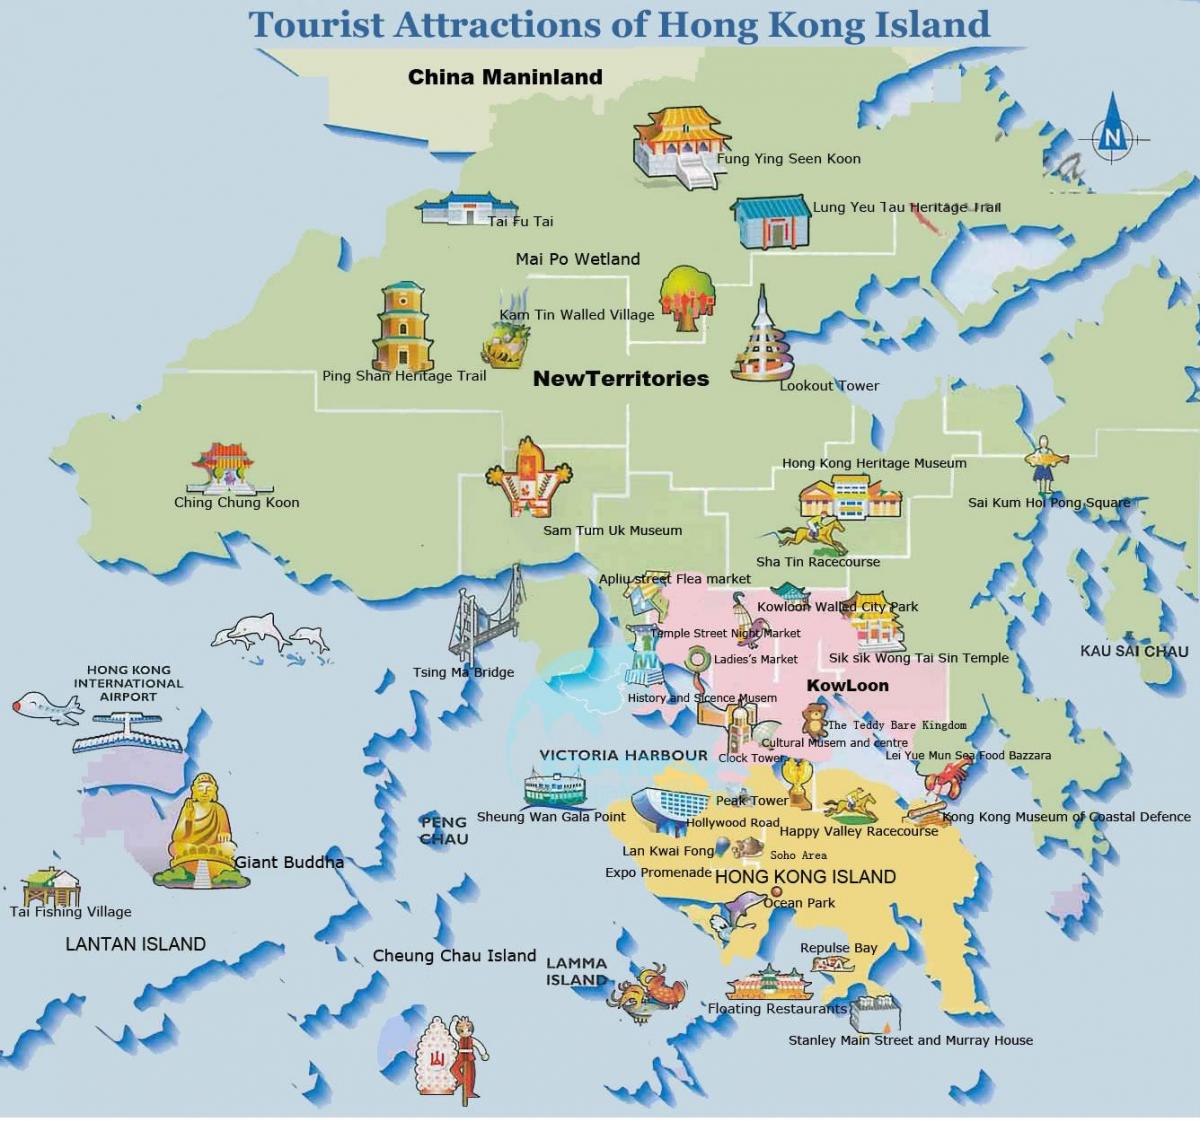 نقشہ ہانگ کانگ کے جزیرے